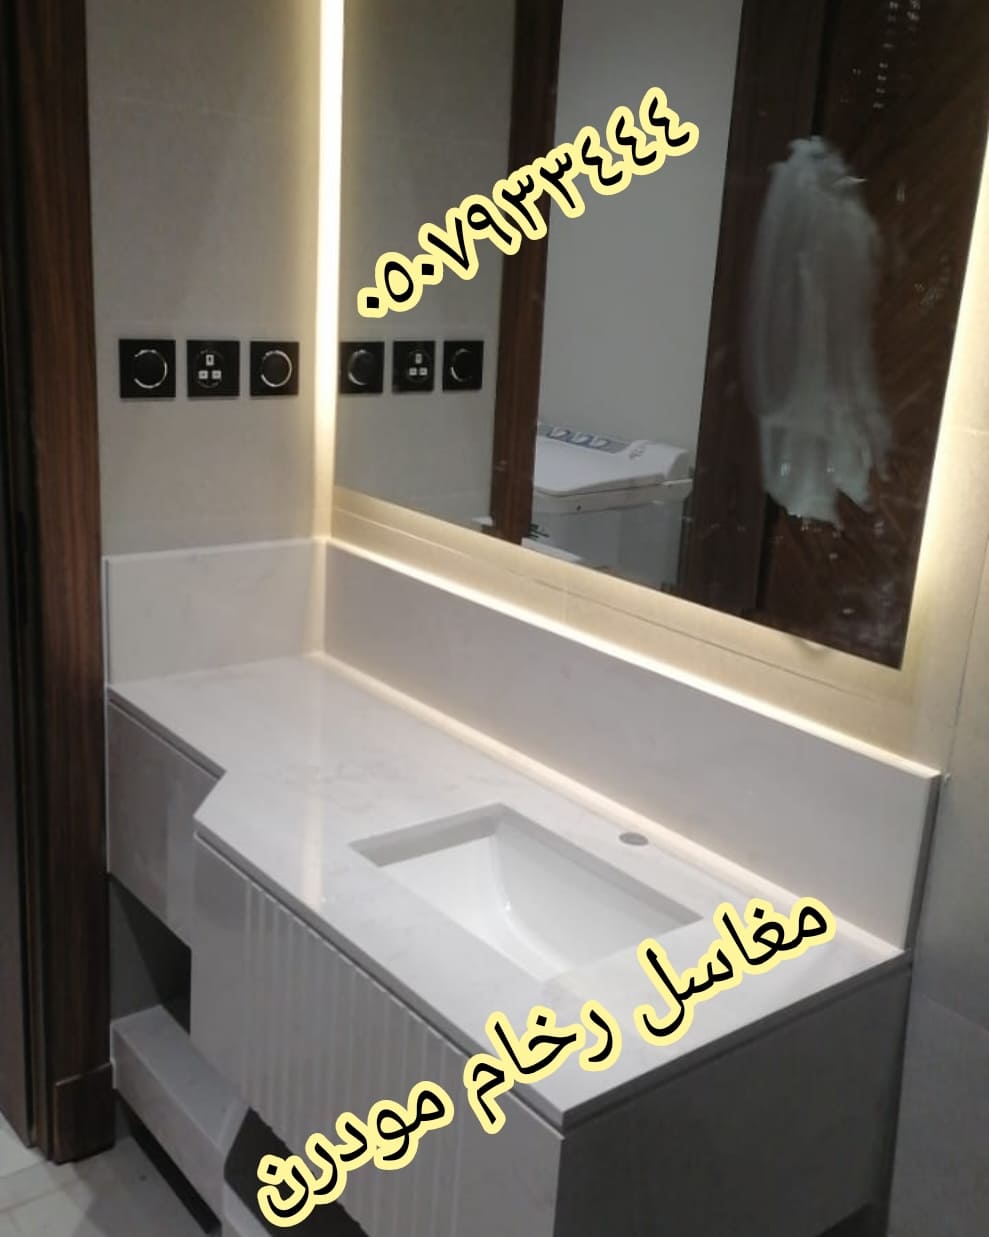                                                  مغاسل رخام , تركيب وتفصيل مغاسل رخام حمامات في مدينة الرياض